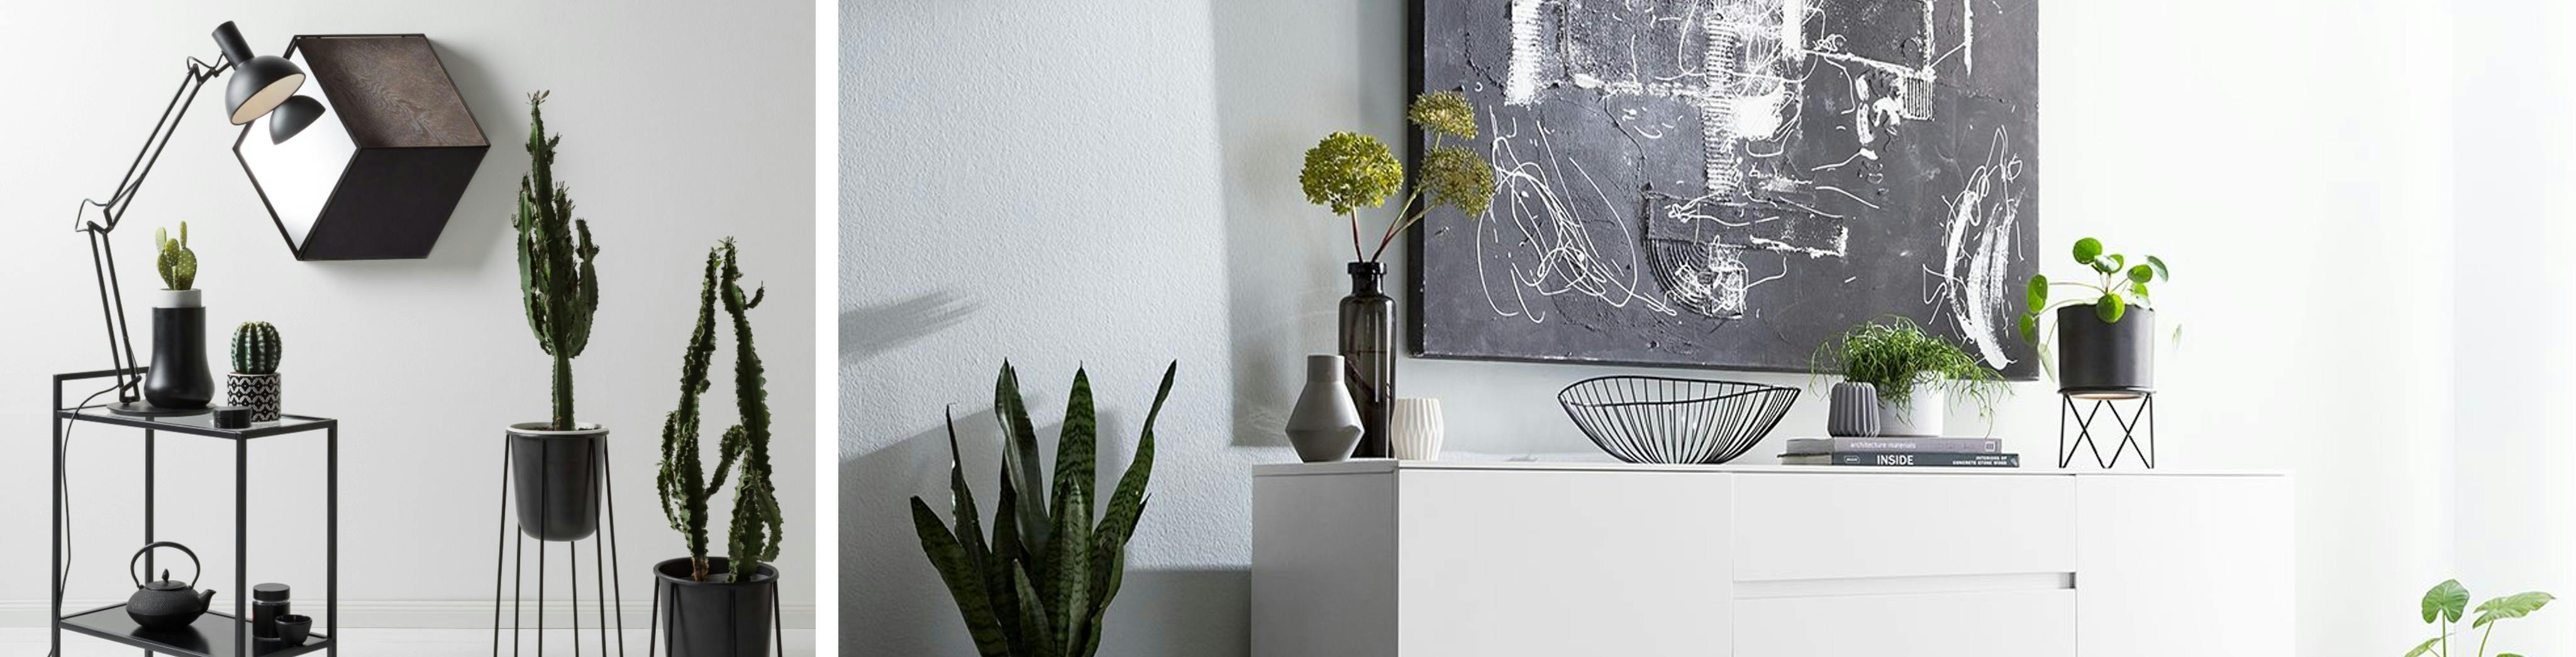 Stilsichere Einrichtung mit Deko, Pflanzen und Bildern